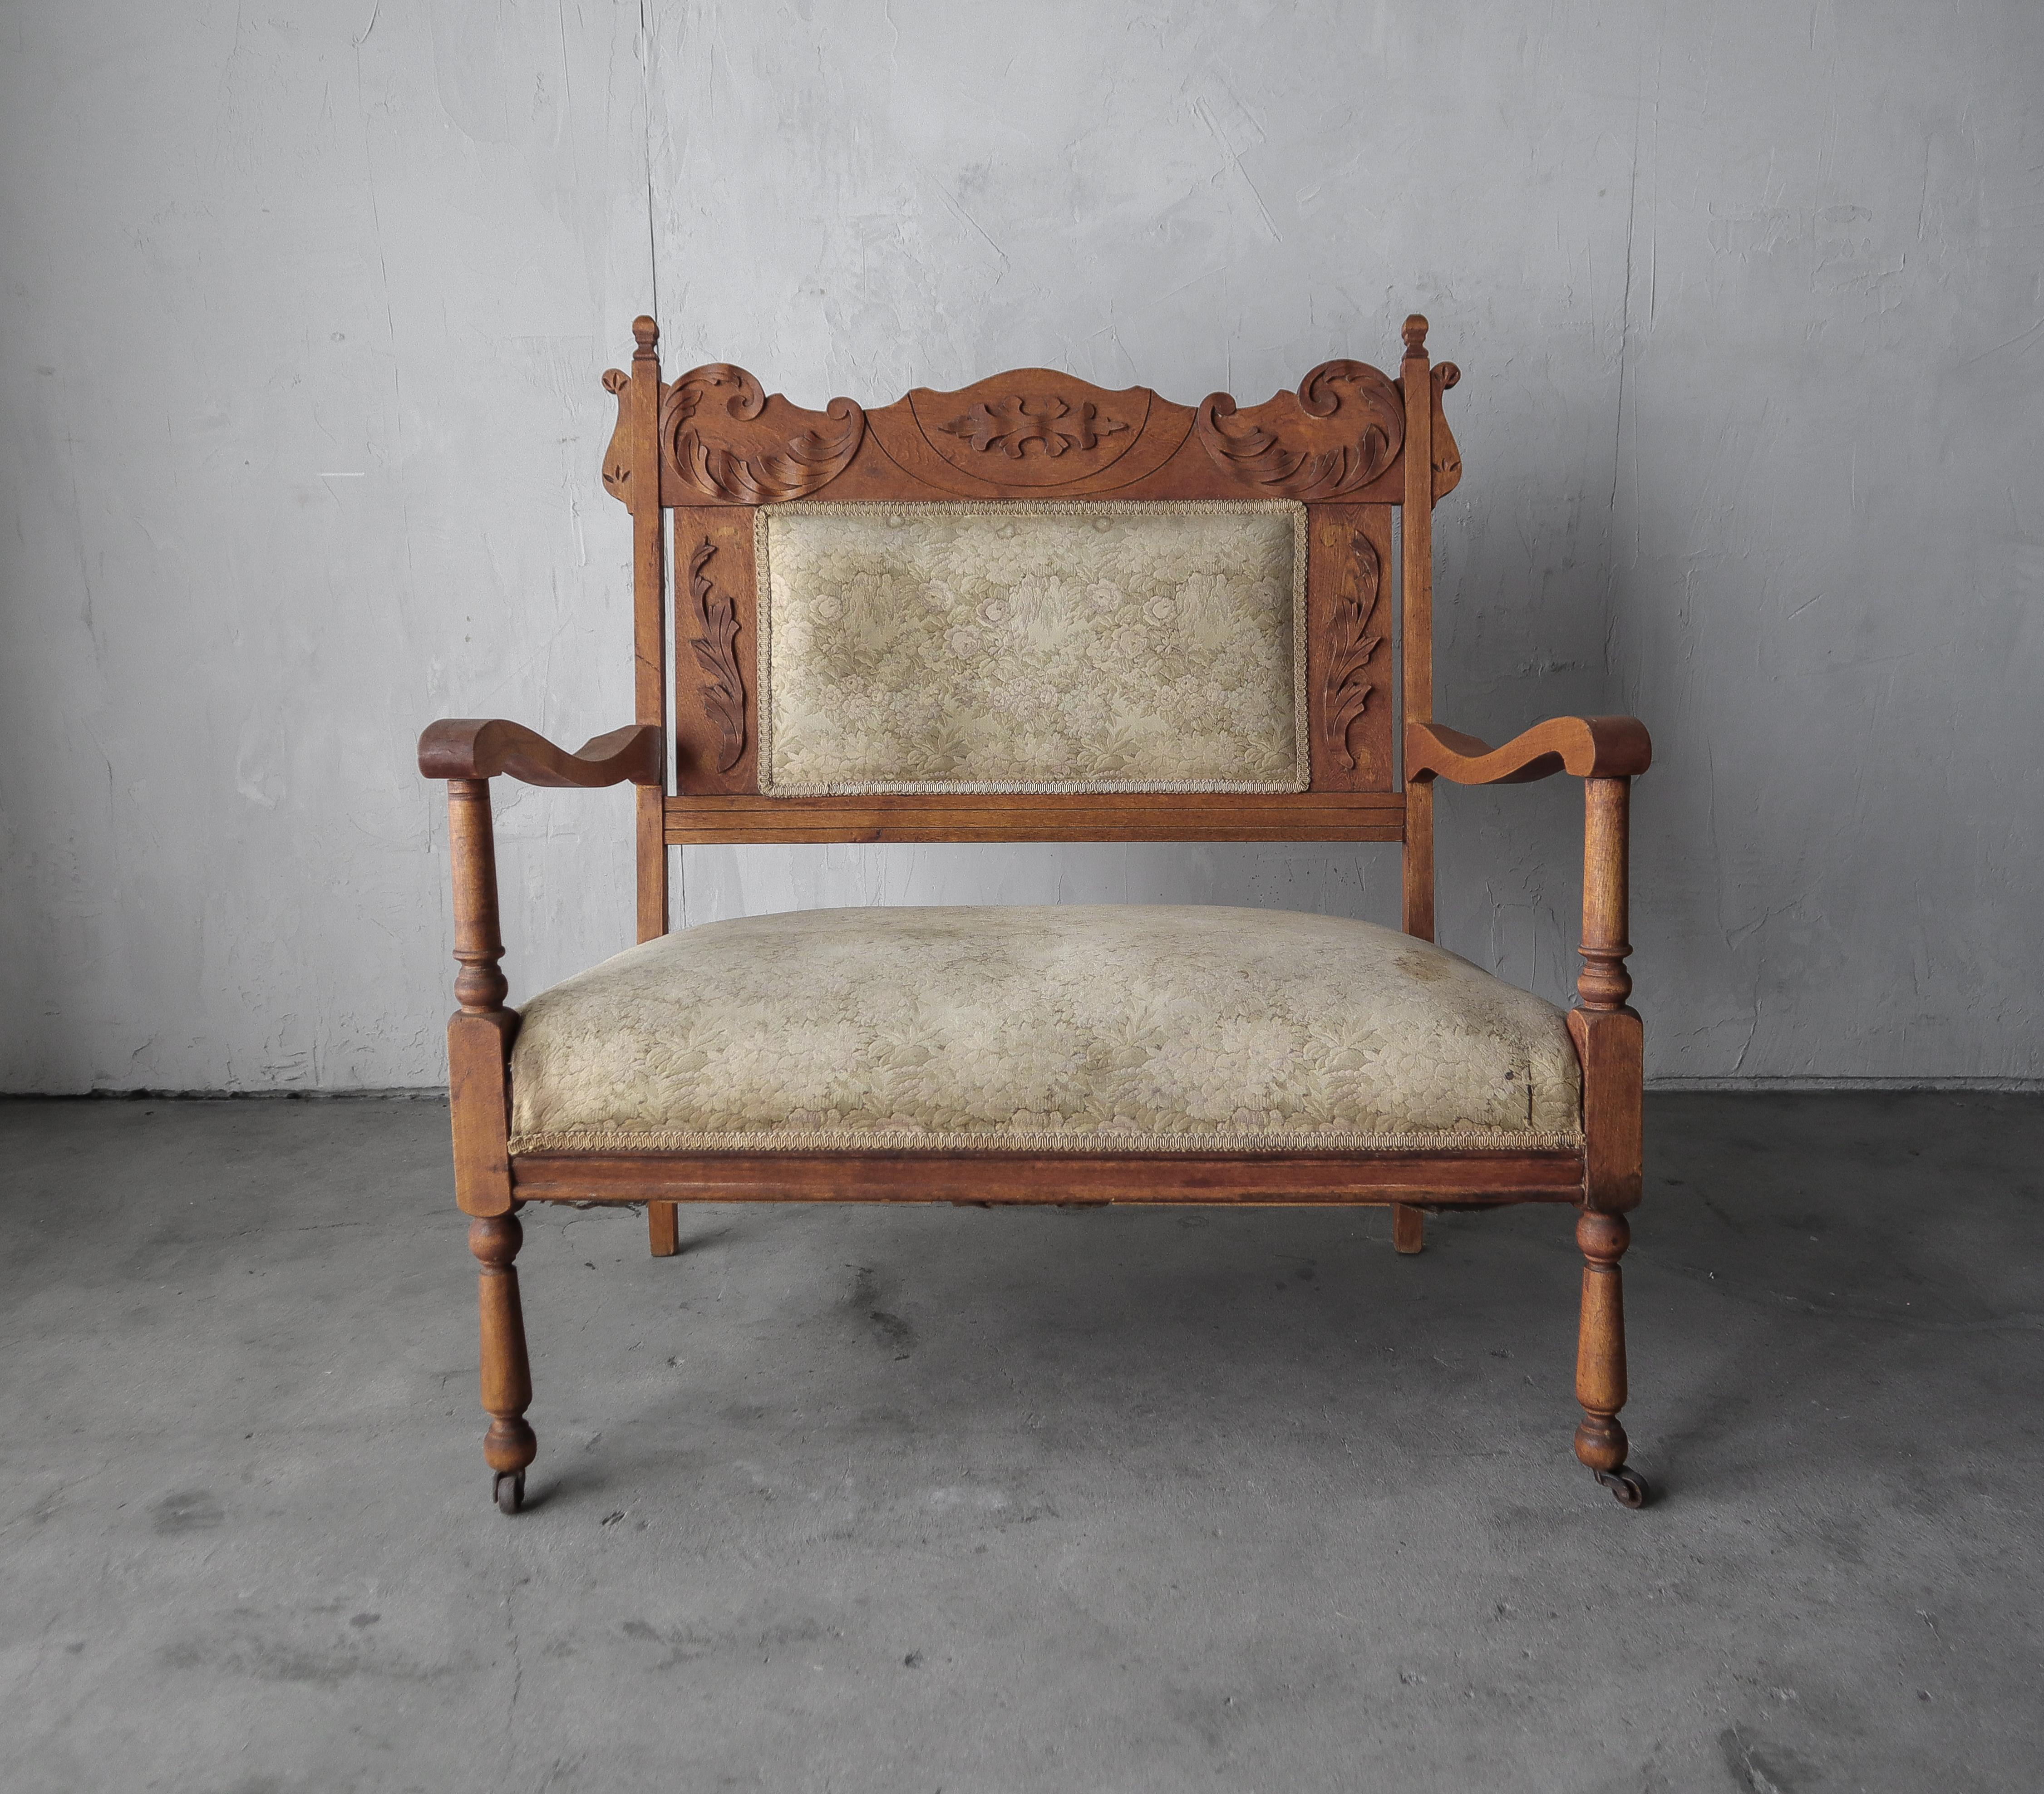 Ein wunderschönes antikes Sitzmöbel mit kunstvoll geschnitzten Holzdetails.  Kann als Bank, Sofa oder übergroßer Stuhl verwendet werden.  Ein schönes antikes Dekorationsstück.

So wie wir es vorgefunden haben, ist das Stück strukturell in Ordnung,